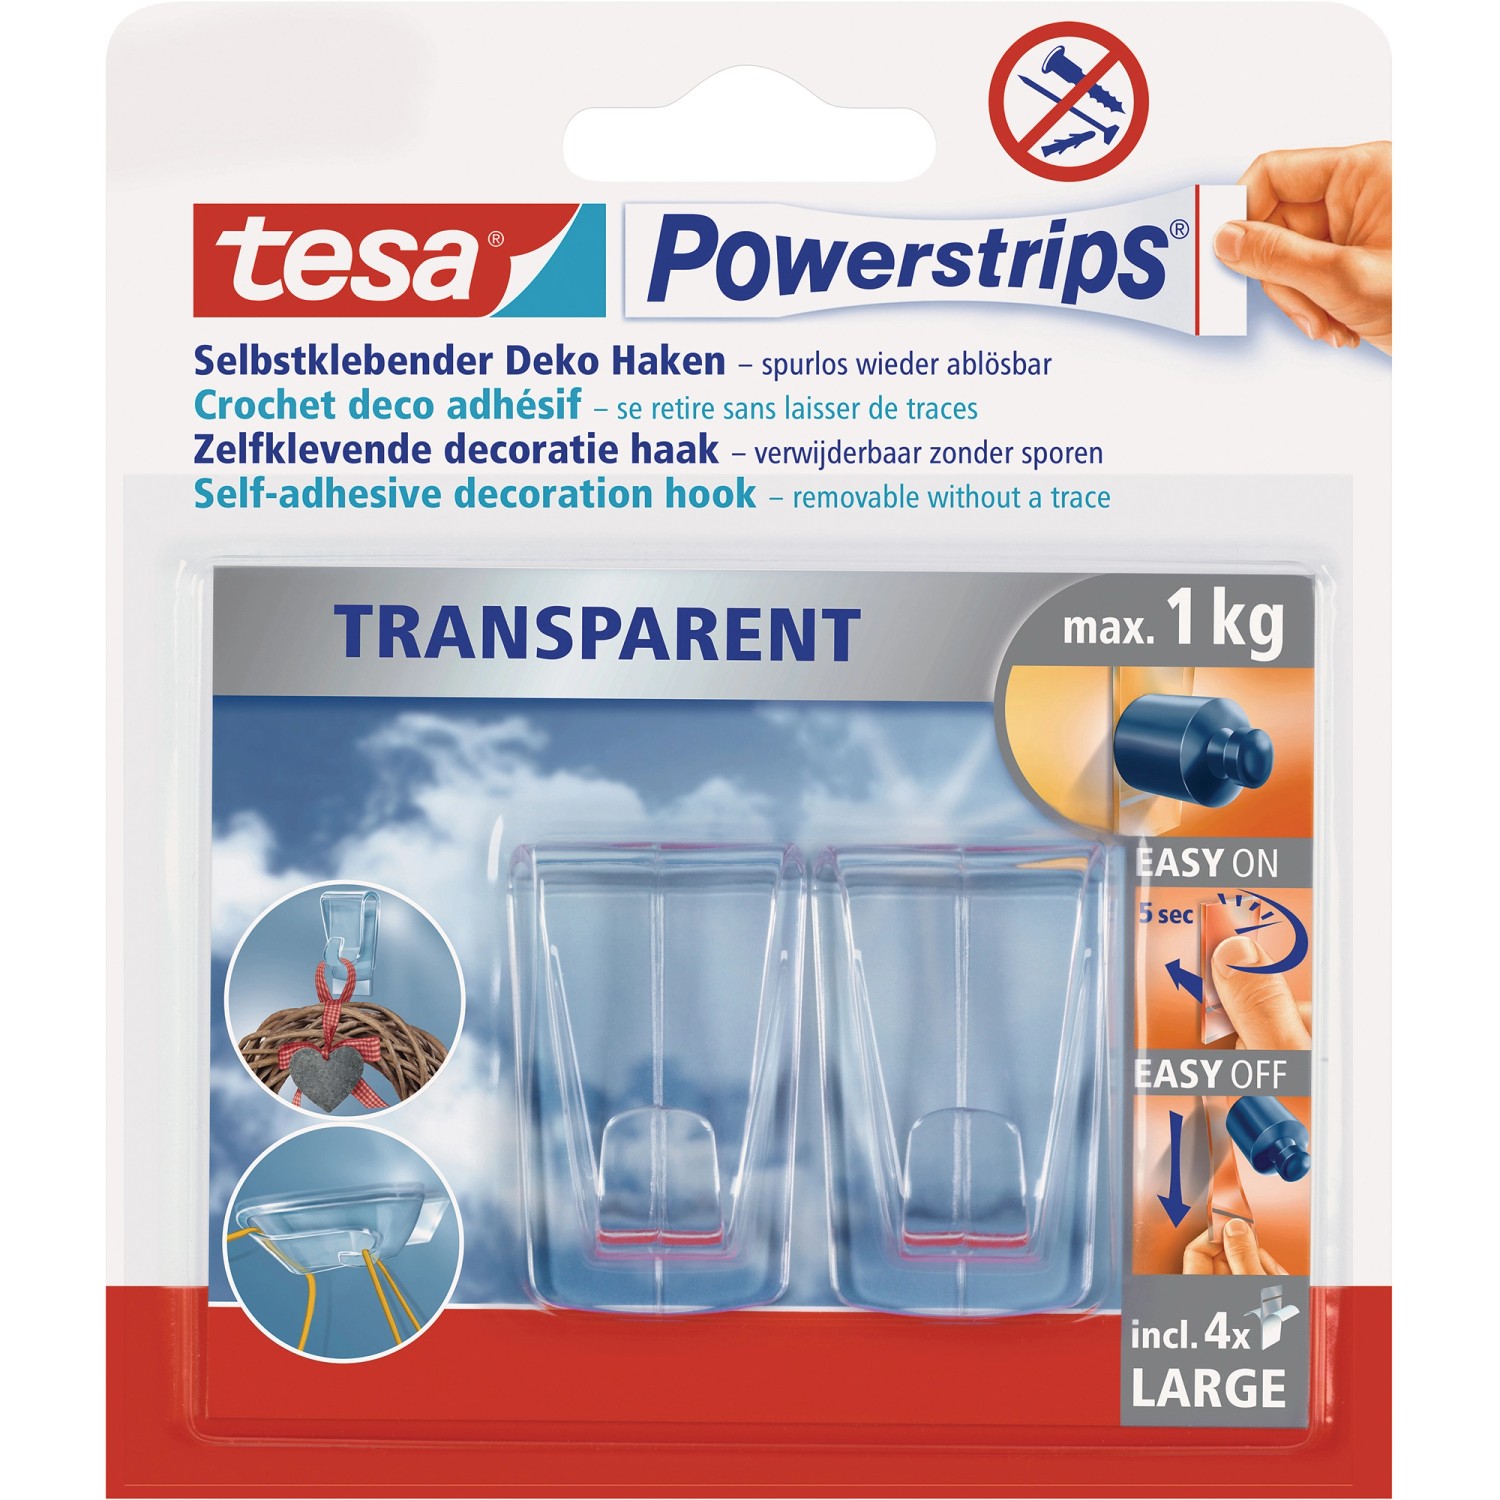 Tesa Powerstrips 2 Deko Haken Transparent mit 4 x Powerstrips Large